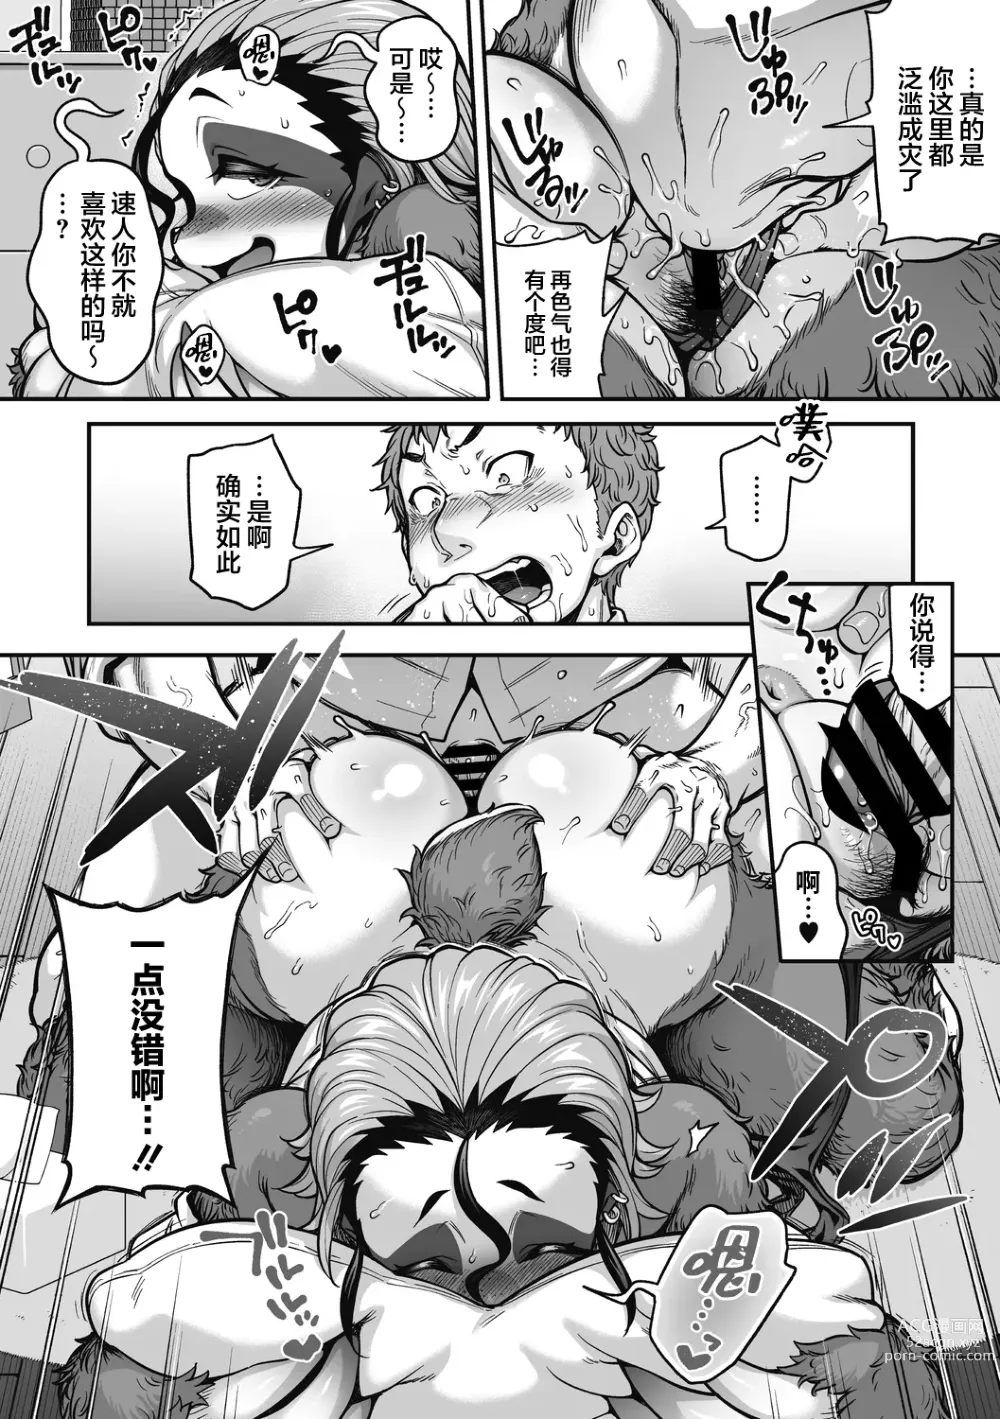 Page 7 of manga Namakete Torokete Tsunagatte